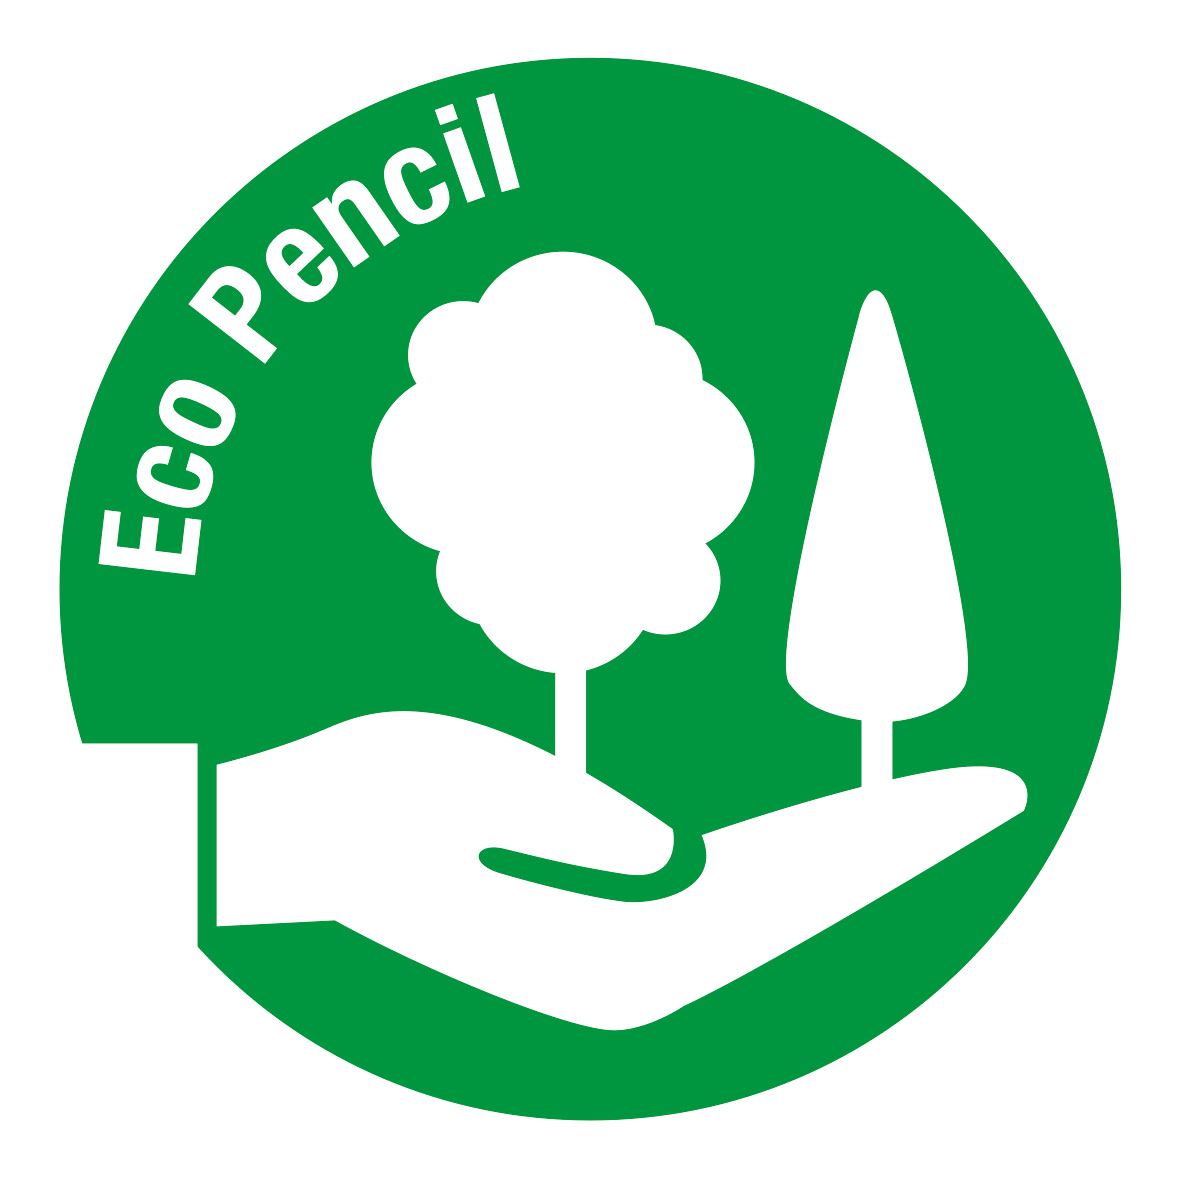 eco_pencil.ashx?mh=100&h=100&w=100&la=es